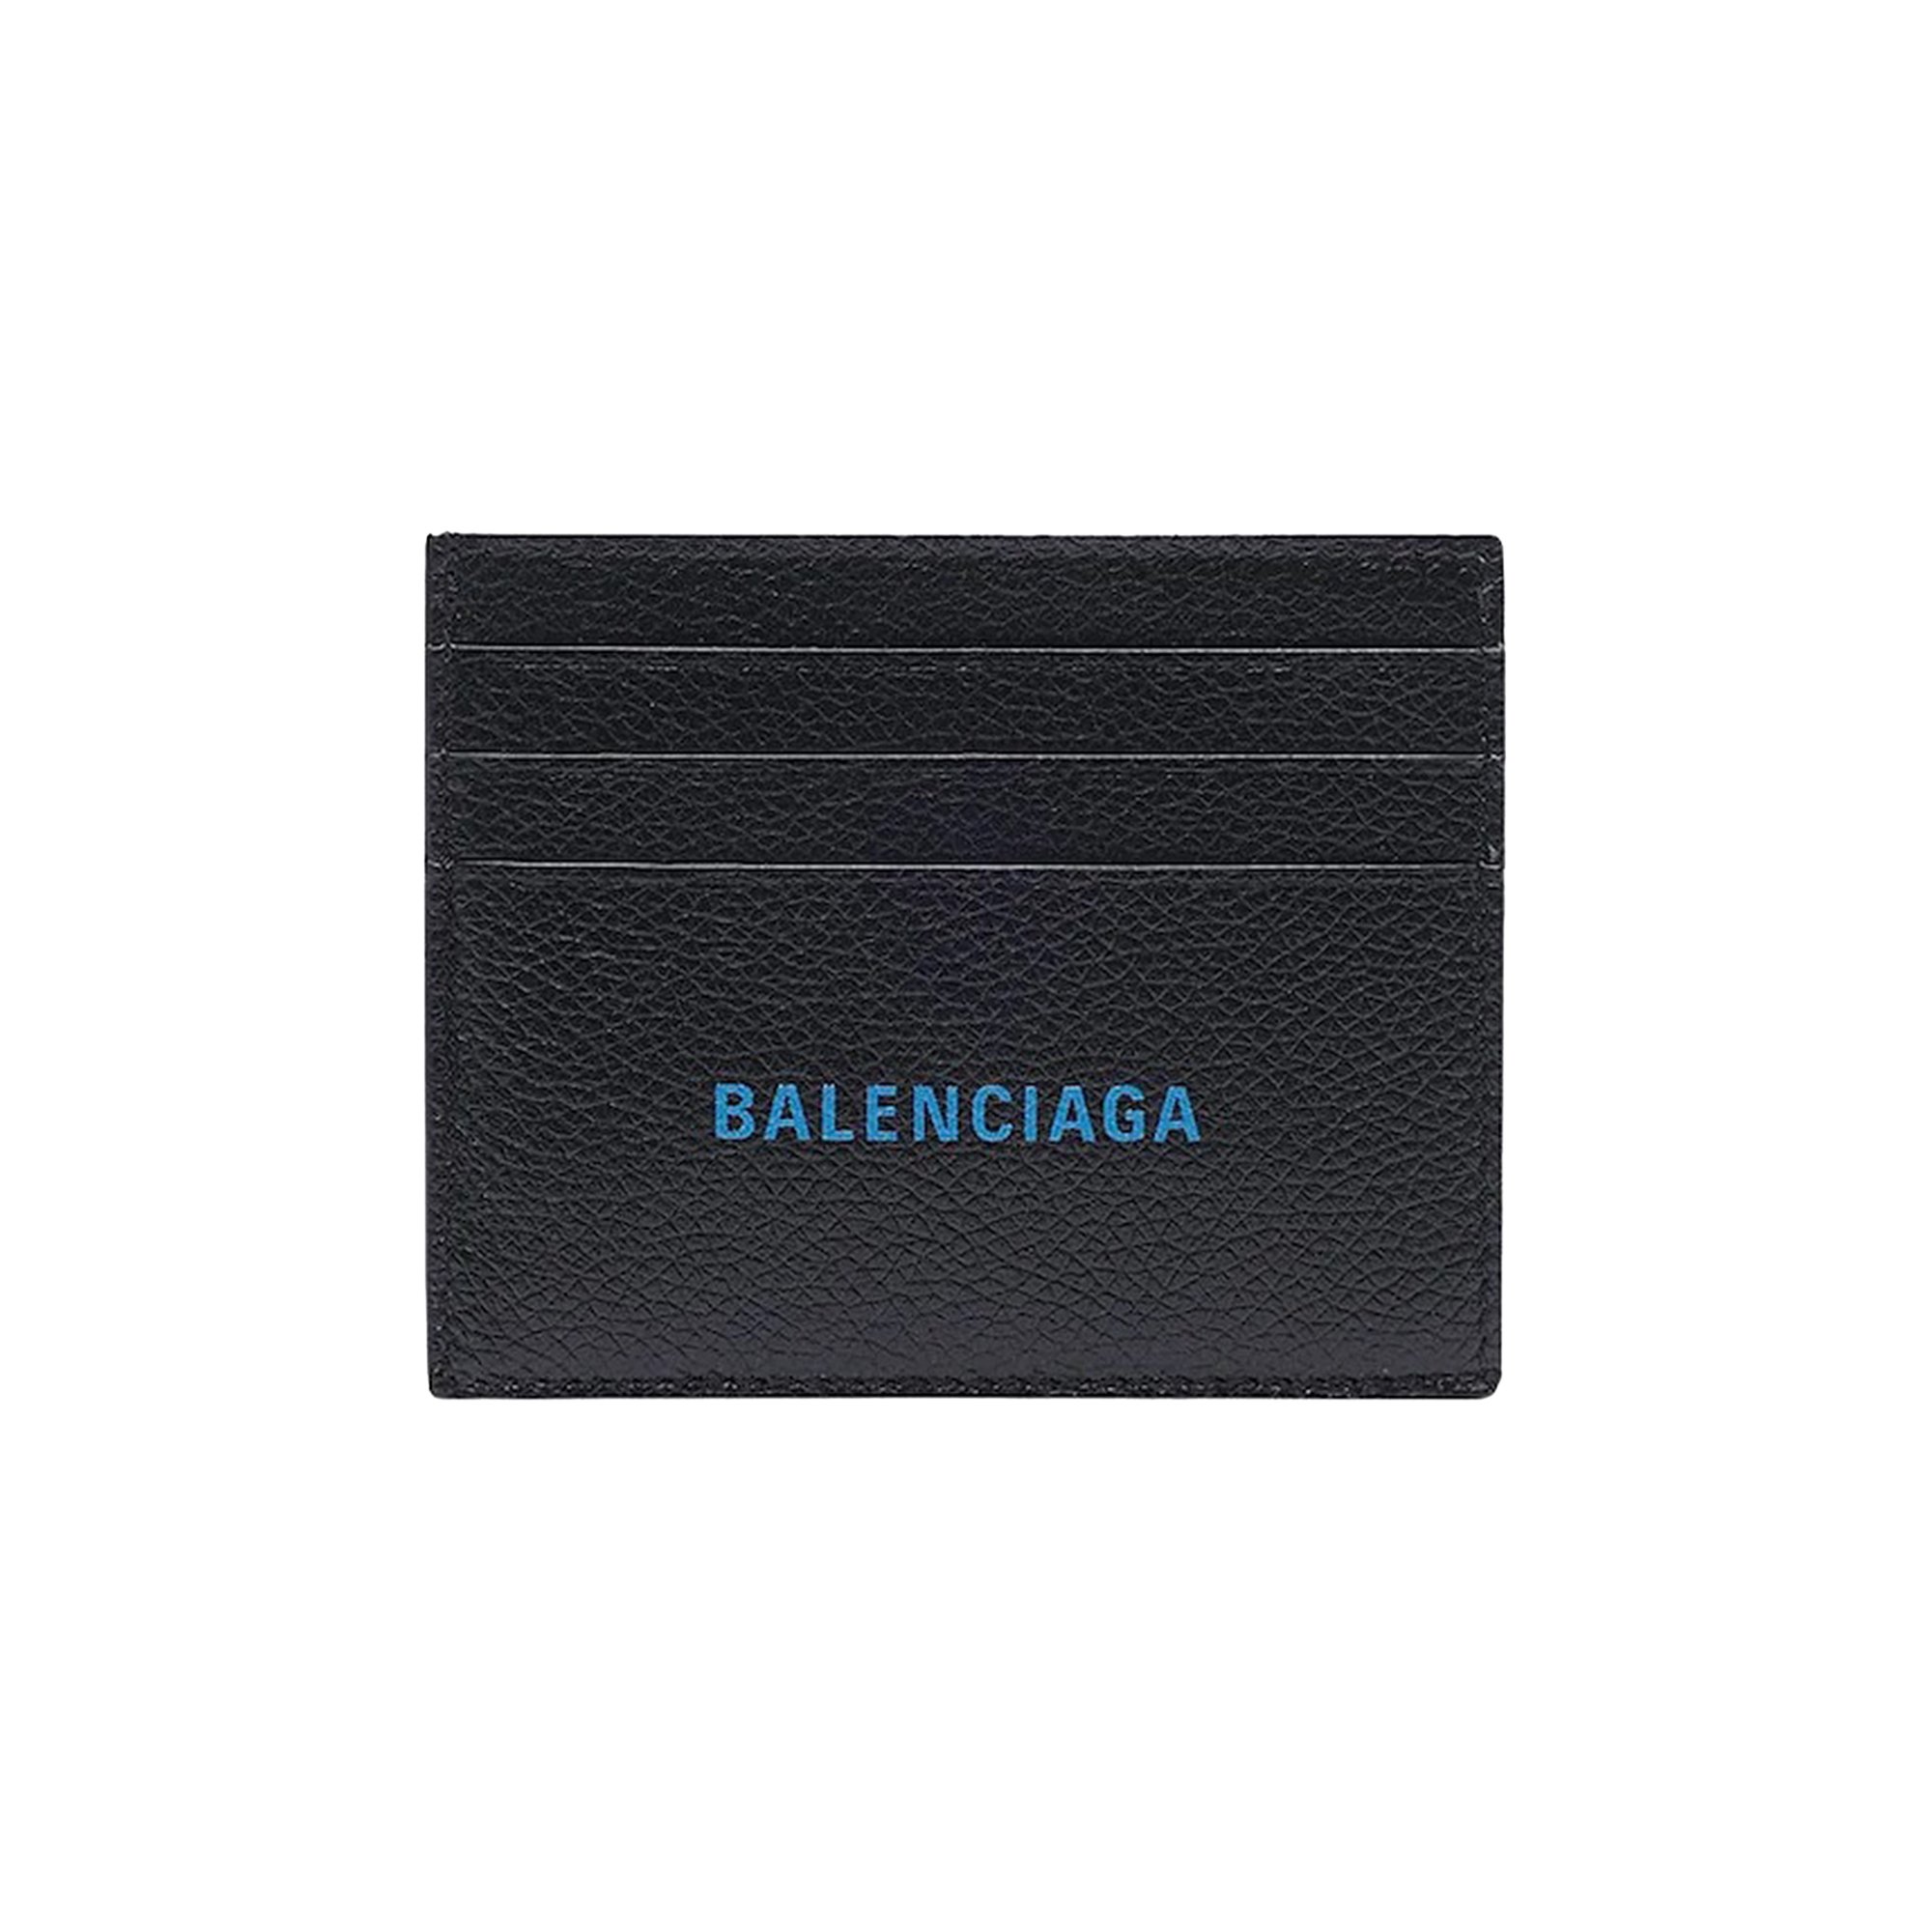 Buy Balenciaga Cash Card Holder 'Black/Cyan' - 683658 1IZI3 1064